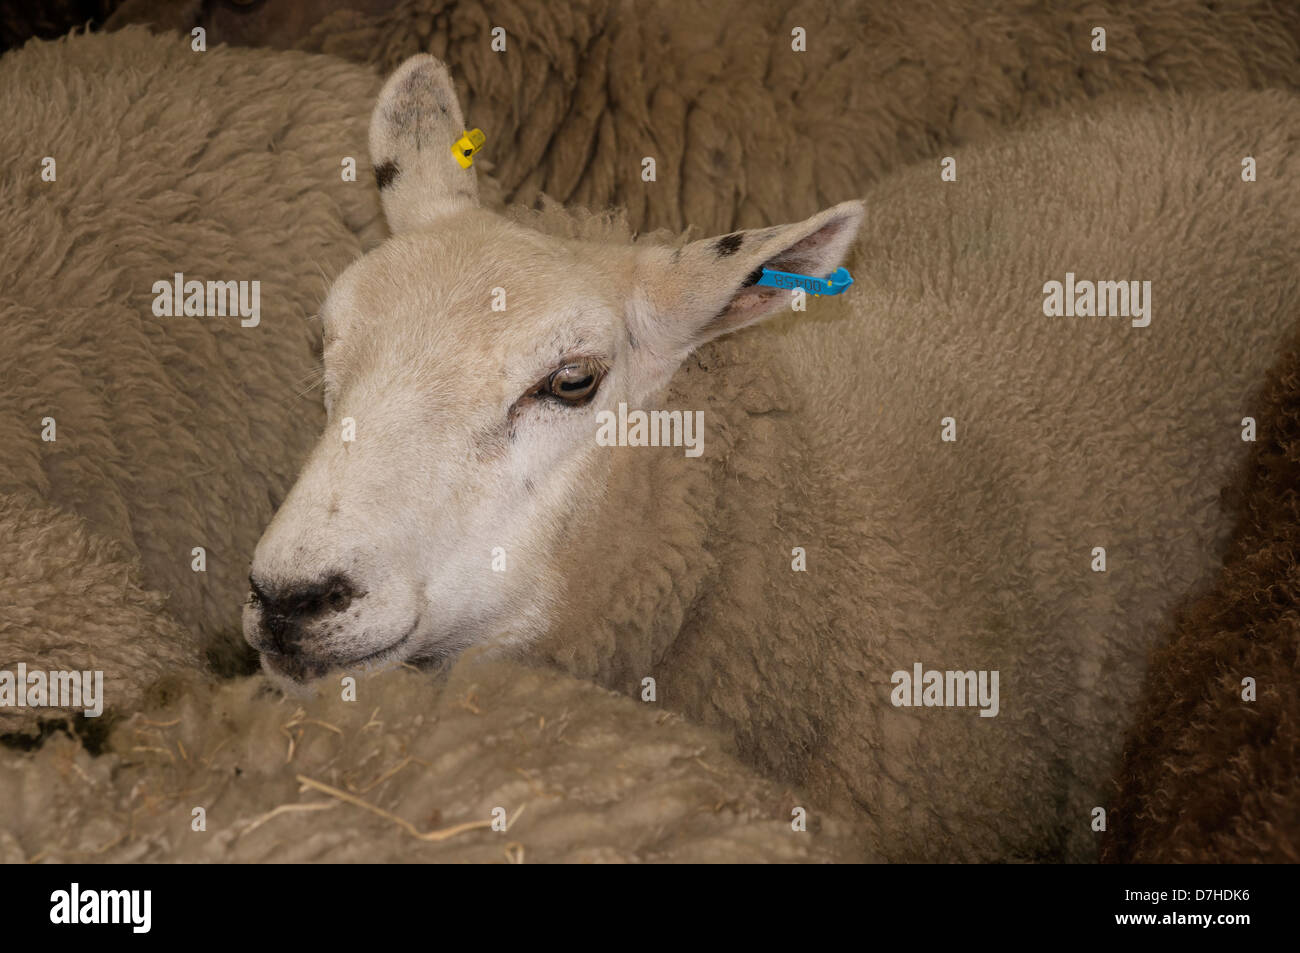 Moutons dans un enclos en attente d'une embardée. Montre une brebis de race mélangée. Photographié au festival de nourriture et boisson, Randazzo. Banque D'Images